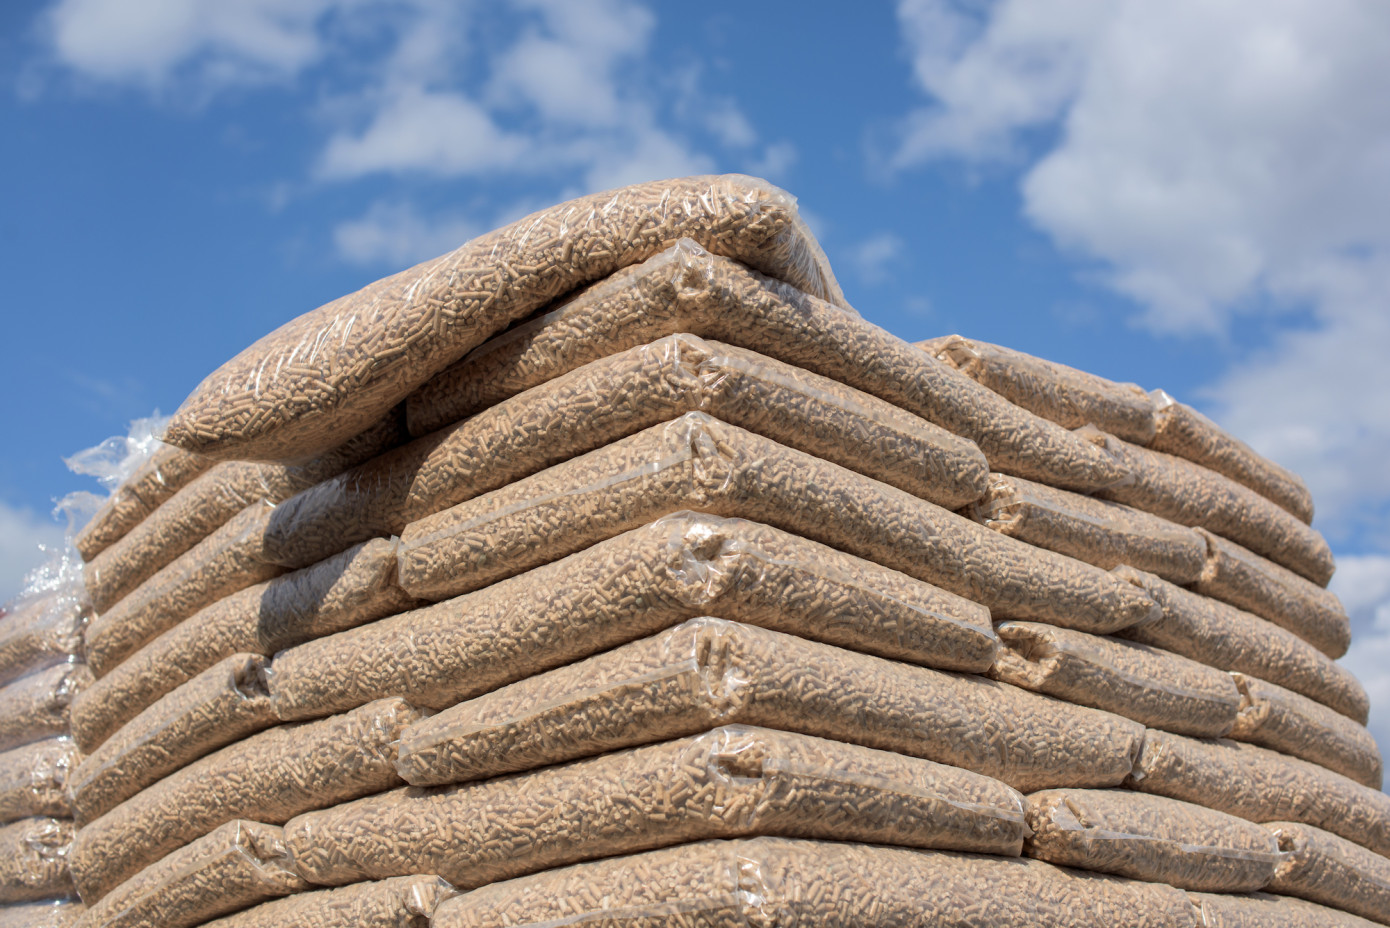 In June, U.S. wood pellet export price increases 24%